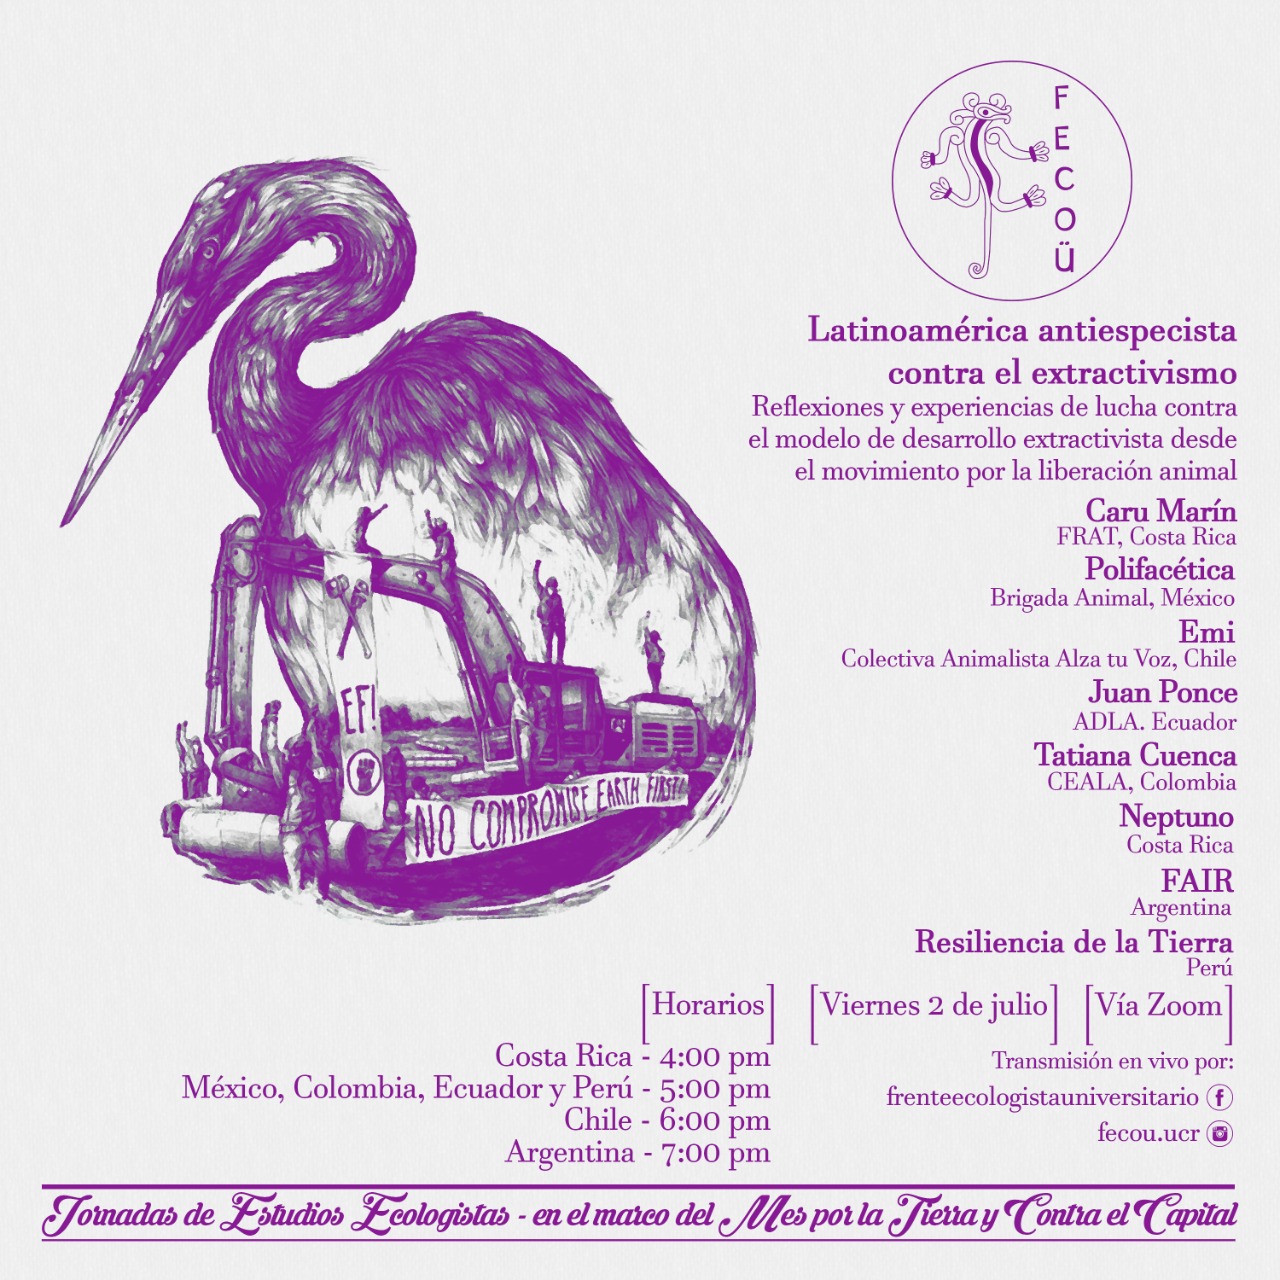 Reseña del encuentro “Latinoamérica antiespecista contra el extractivismo”